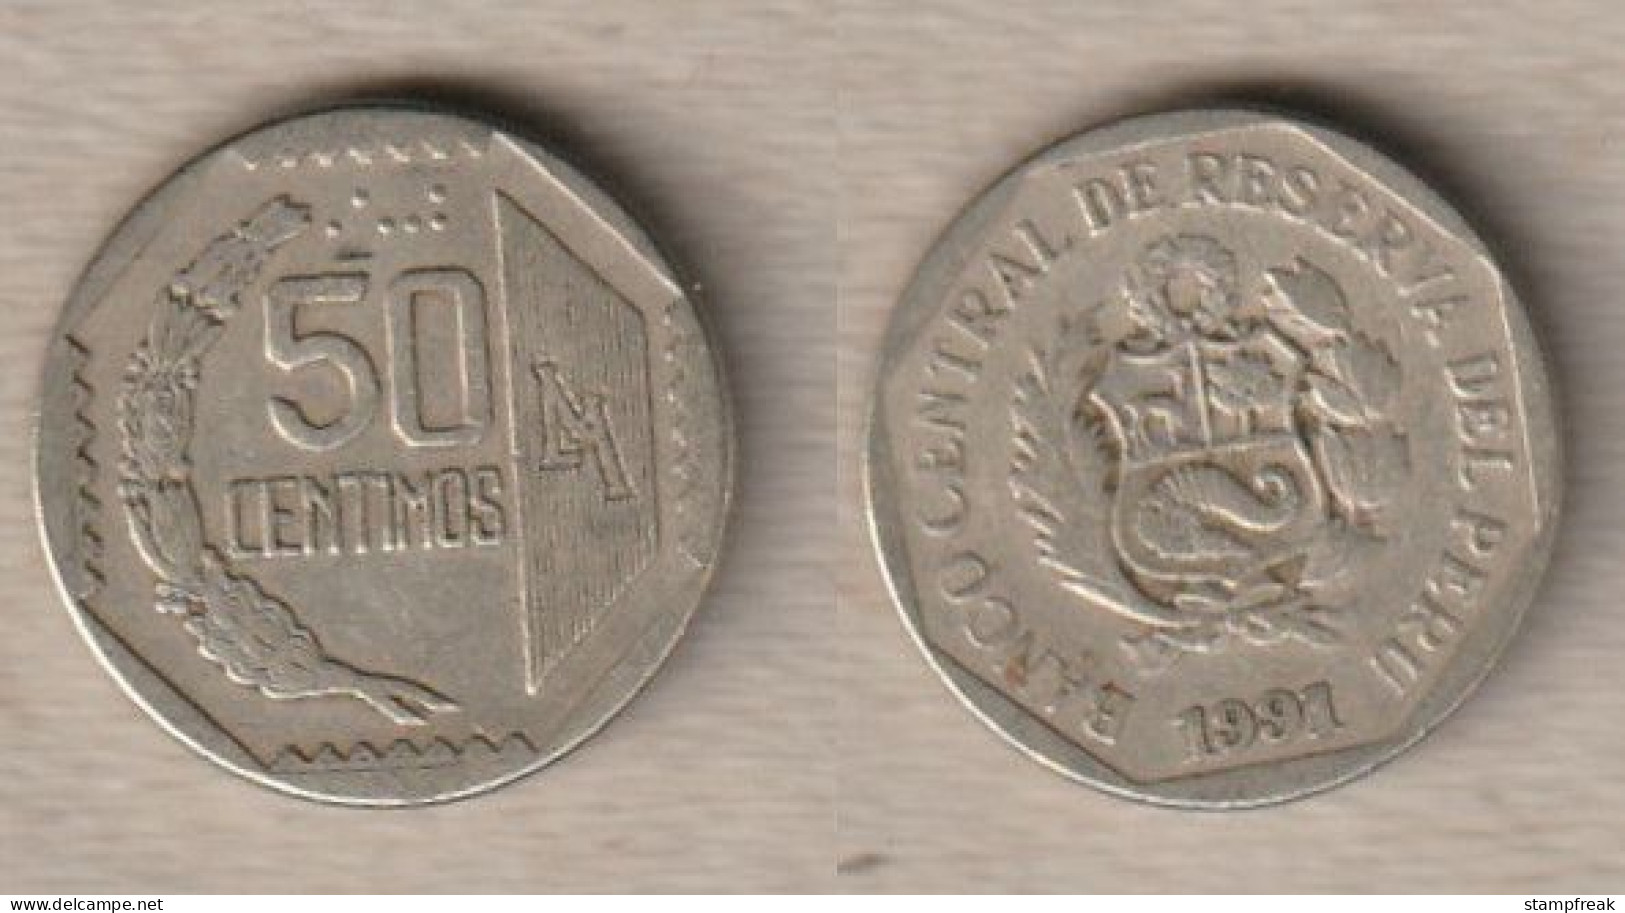 02345) Peru, 50 Centimos 1991 - Peru